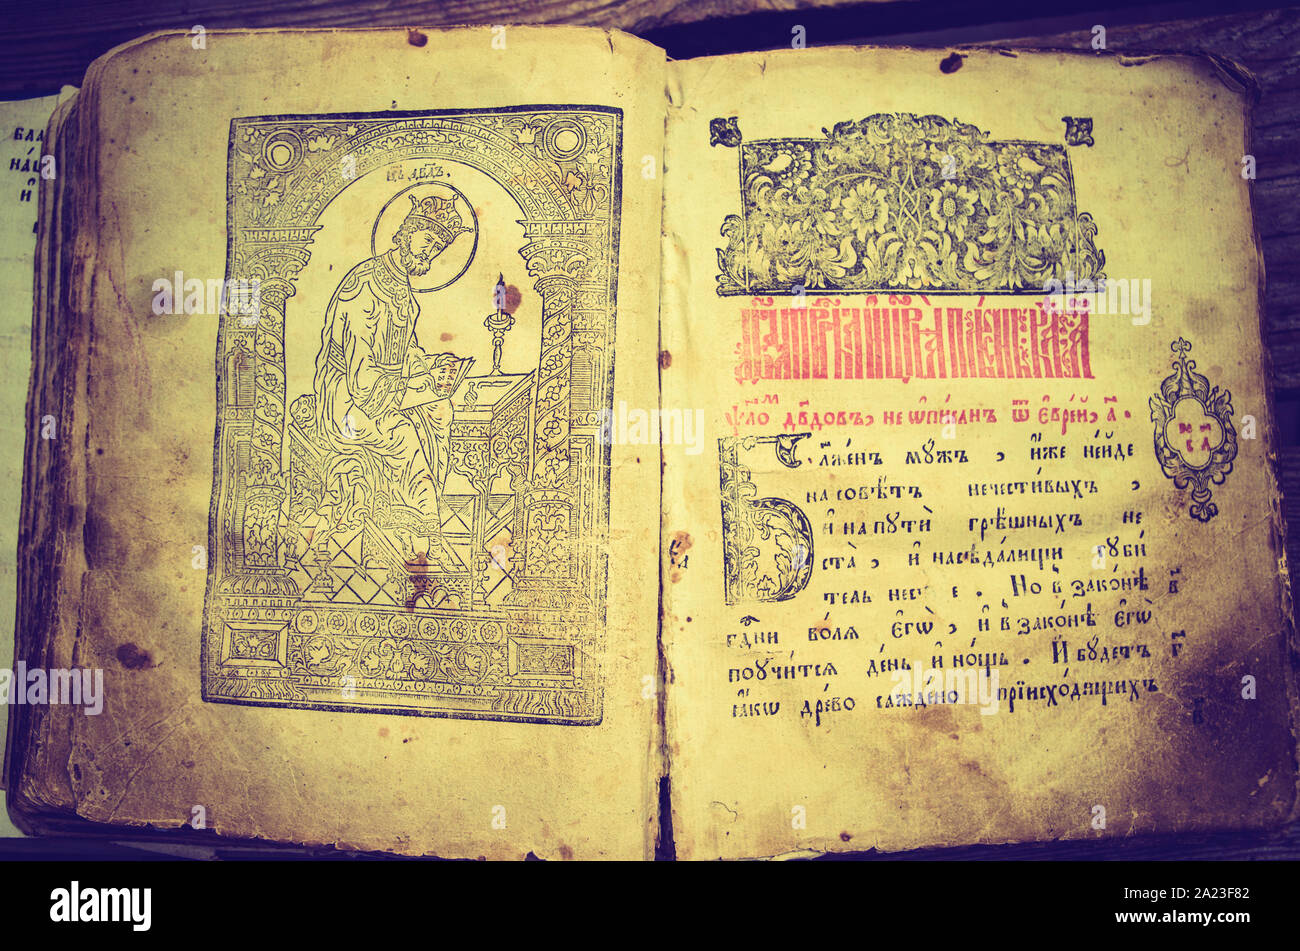 Vieux slave bible avec texte cyrillique Banque D'Images